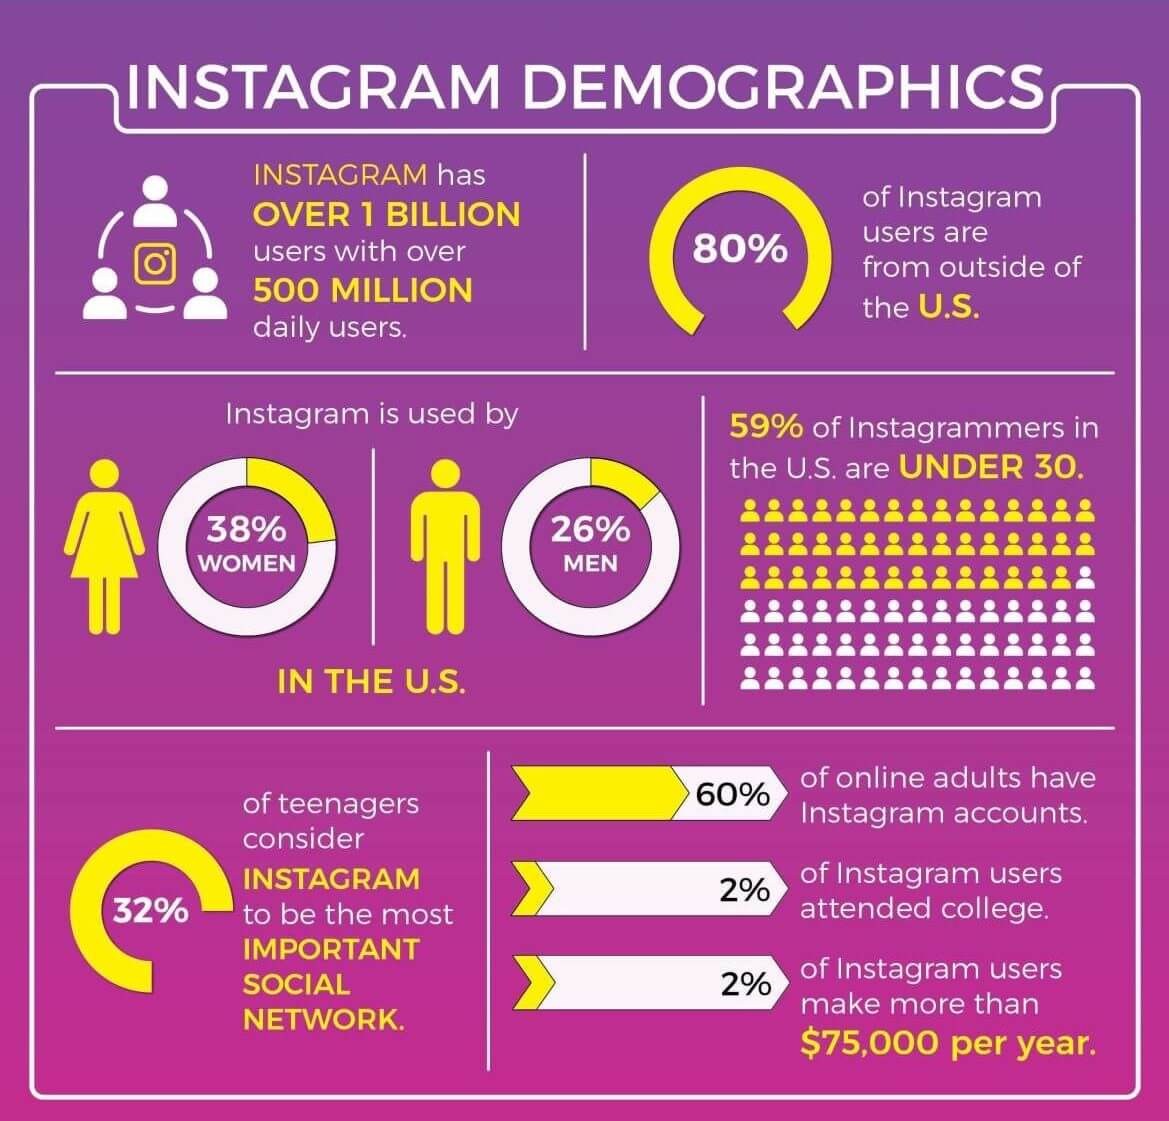 Demographics of Instagram